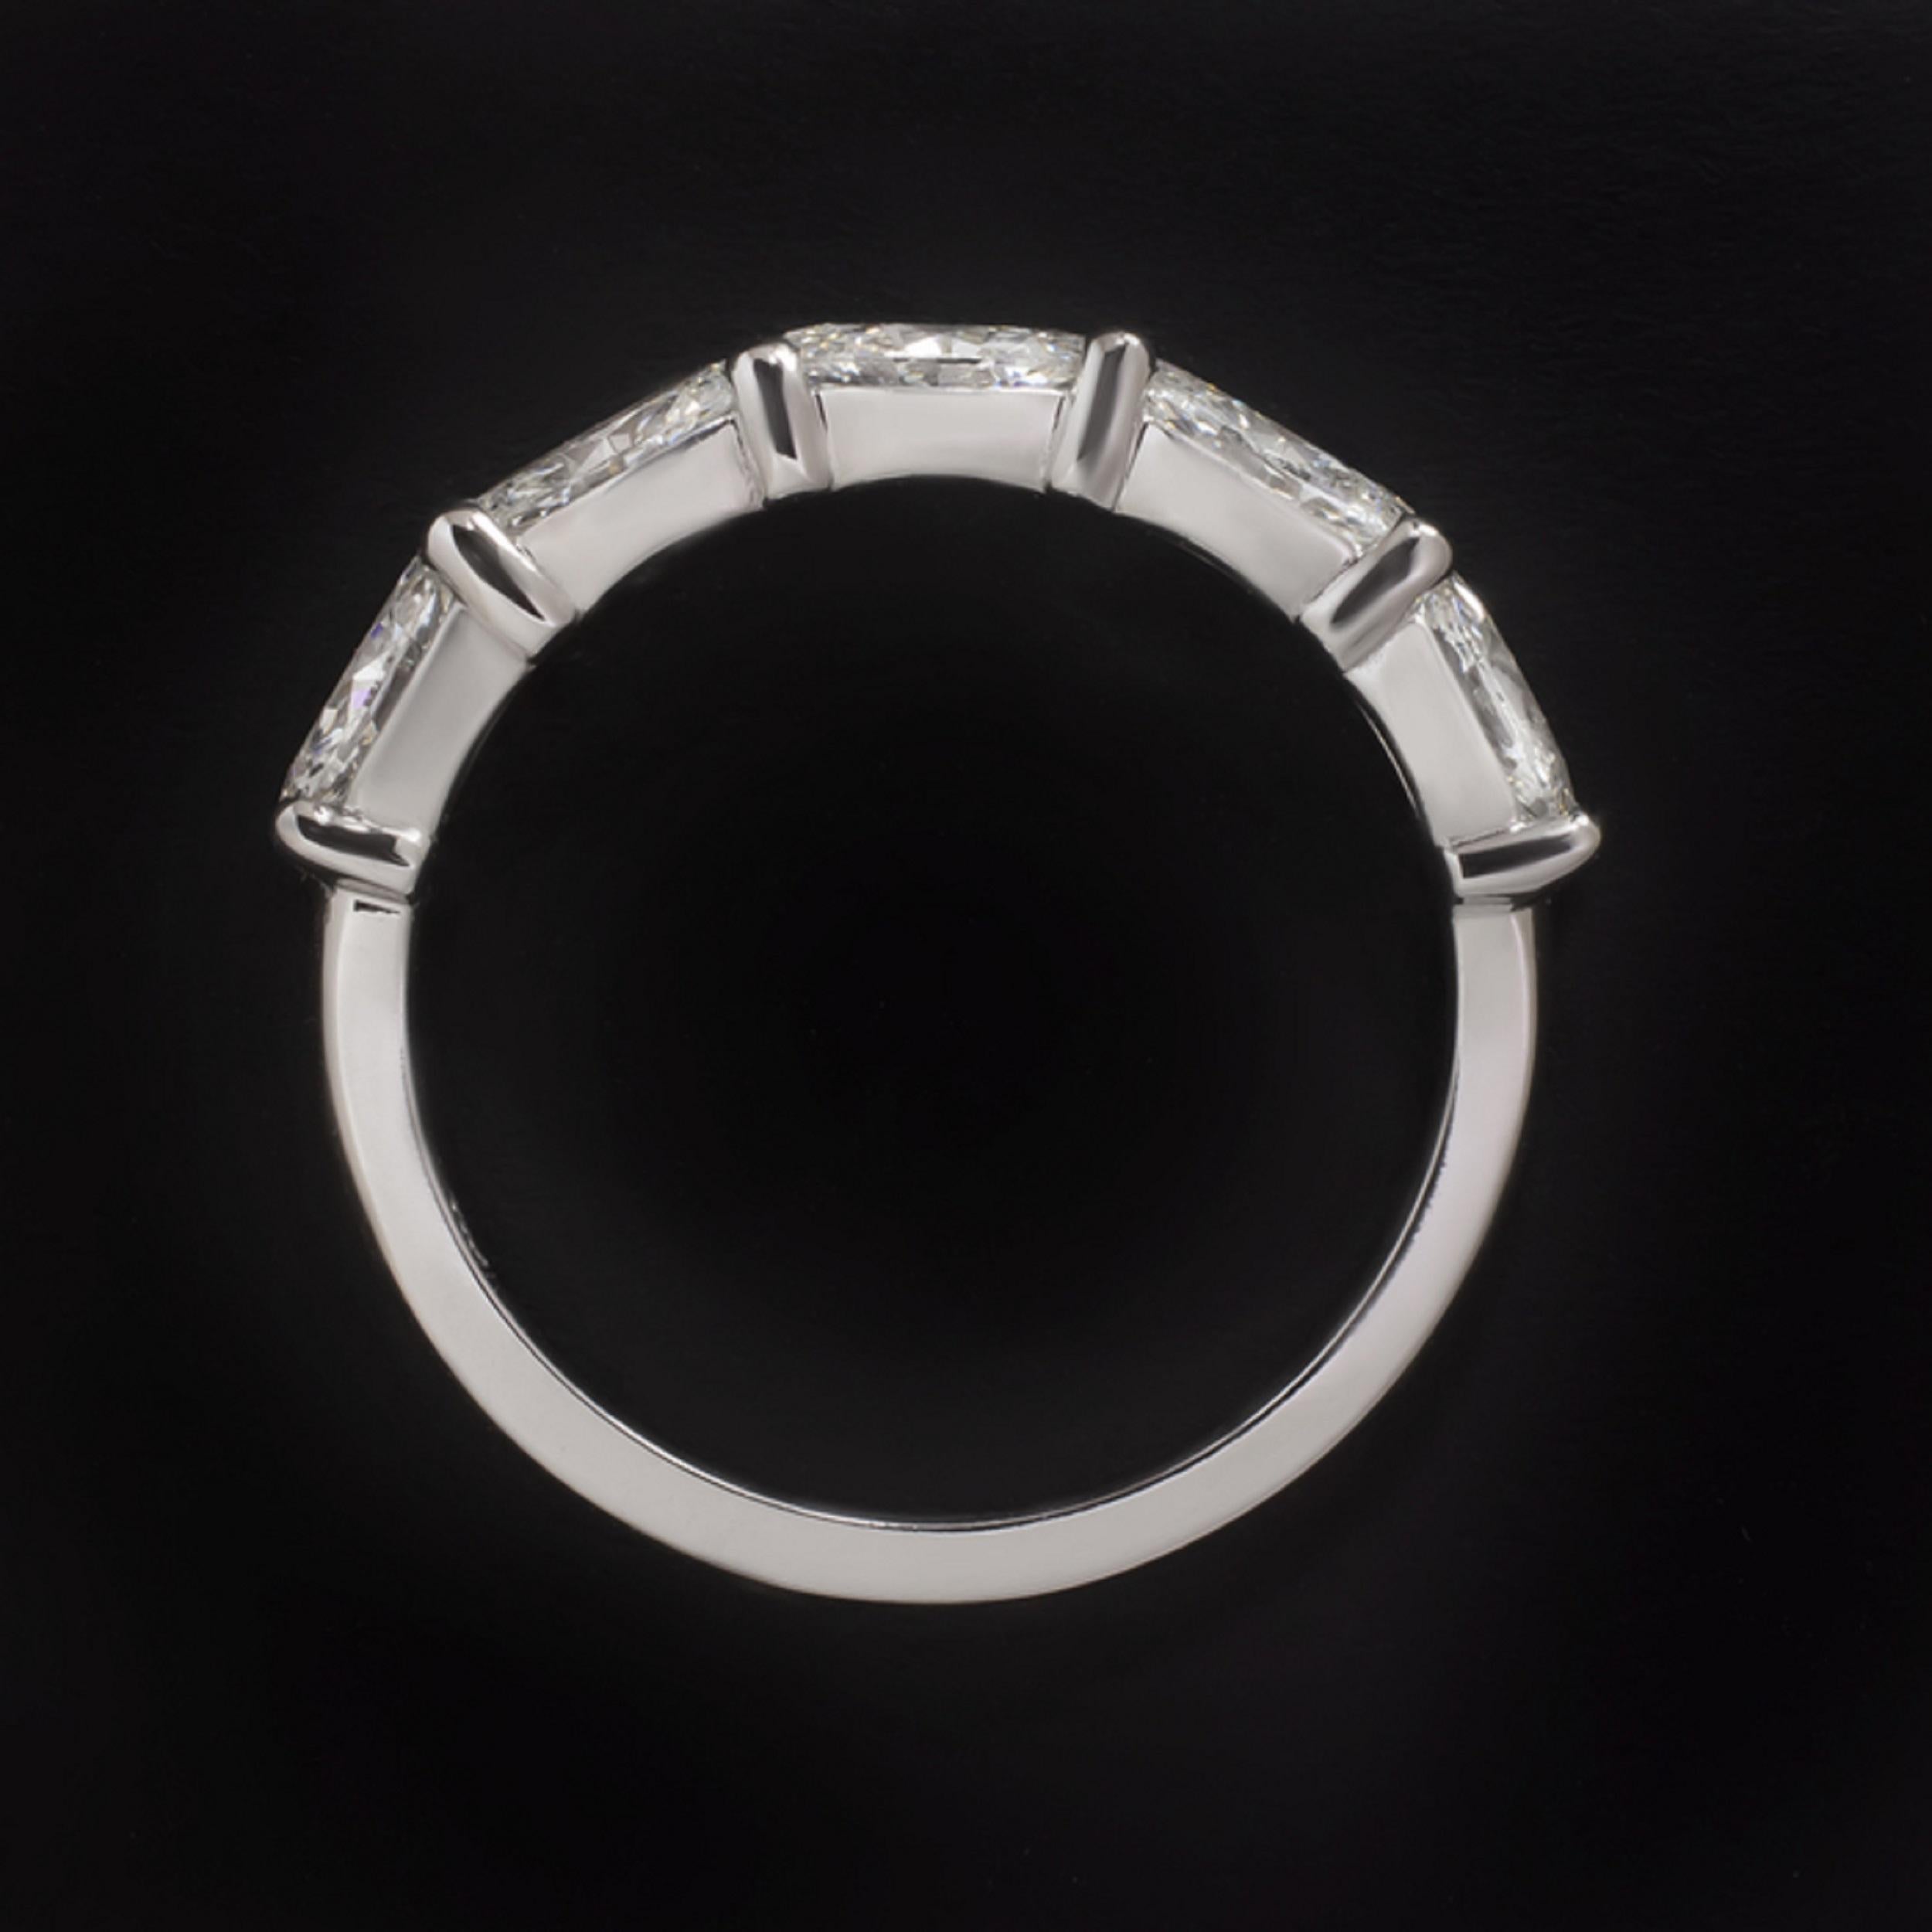 Cette bague saisissante présente 1 carat de diamants ovales éclatants, sertis dans un anneau moderne d'une élégante simplicité. Cinq diamants de haute qualité, parfaitement assortis et de taille substantielle, couvrent la face de la bague d'un éclat